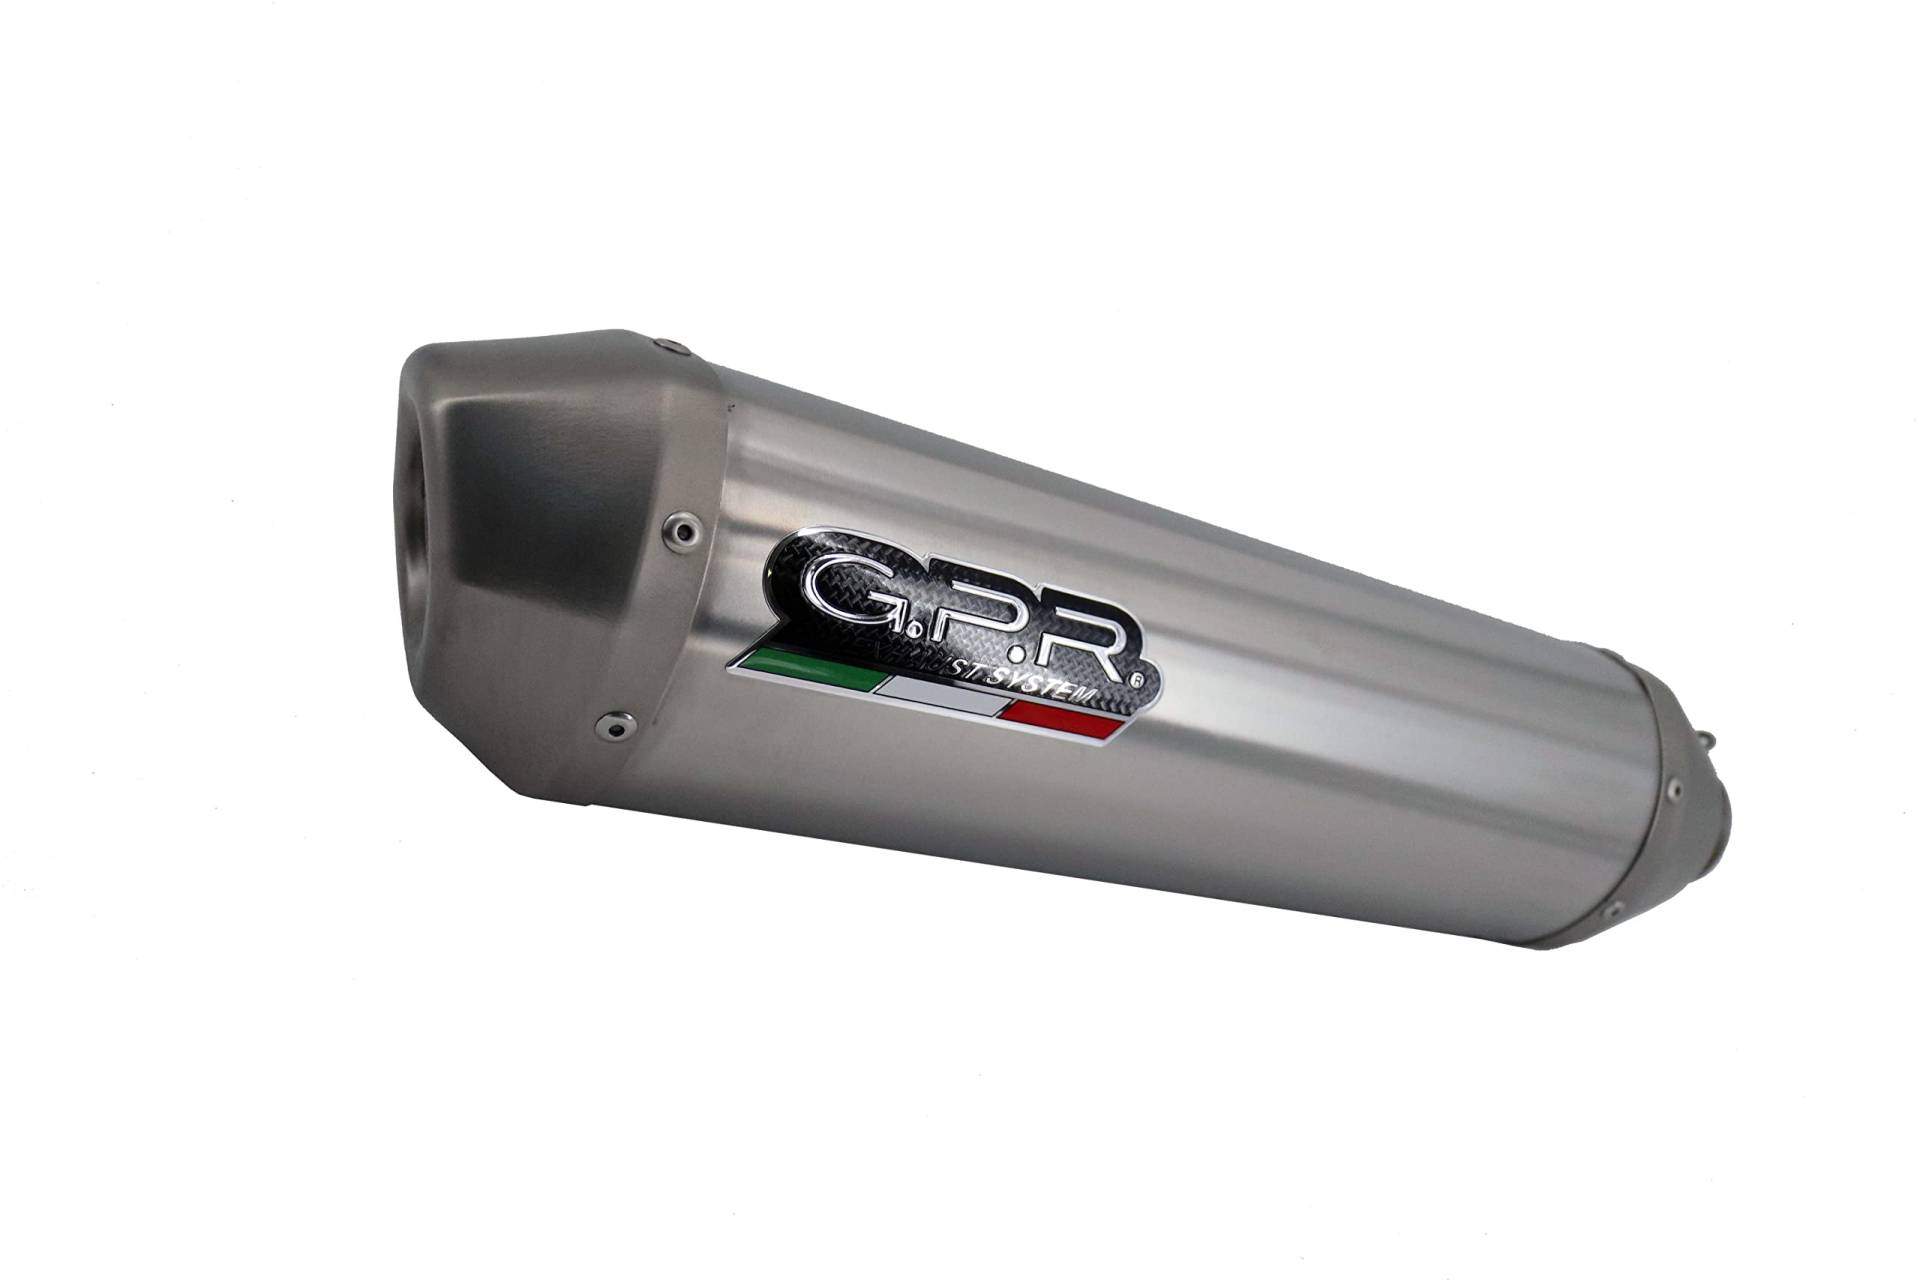 Scarico GPR Husqvarna Enduro 701 2015/2016 E3 Auspuff zugelassen, katalysiert, GPR Serie Pentasport, Full Titanium von Scarico GPR